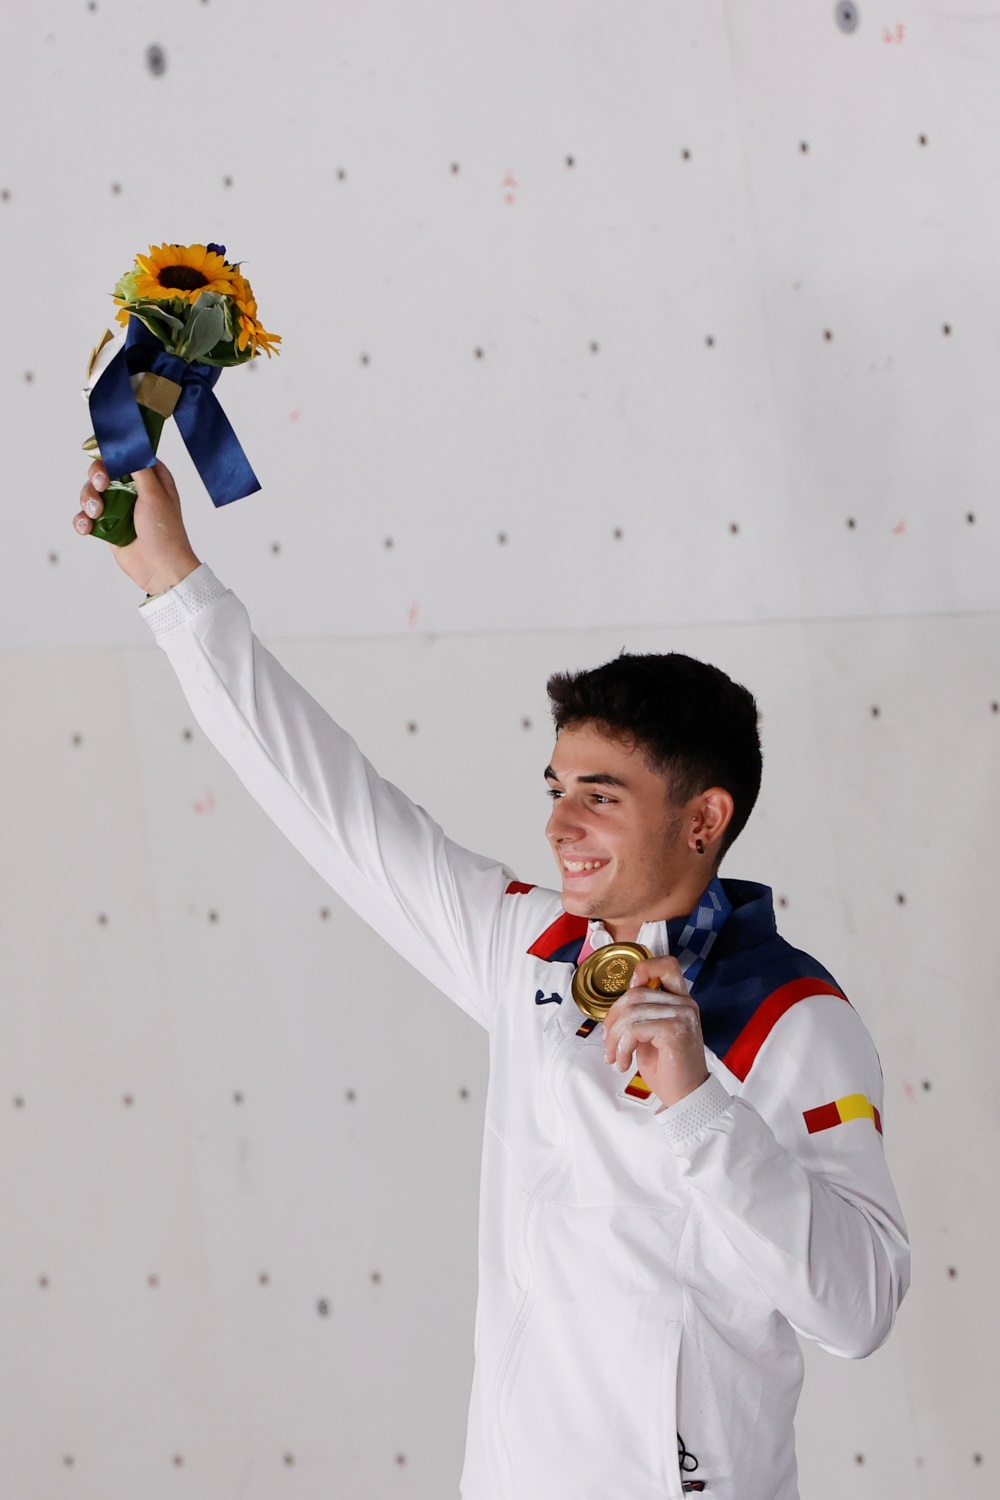 El español Alberto Ginés celebra en el podio tras conseguir la medalla de oro en escalada